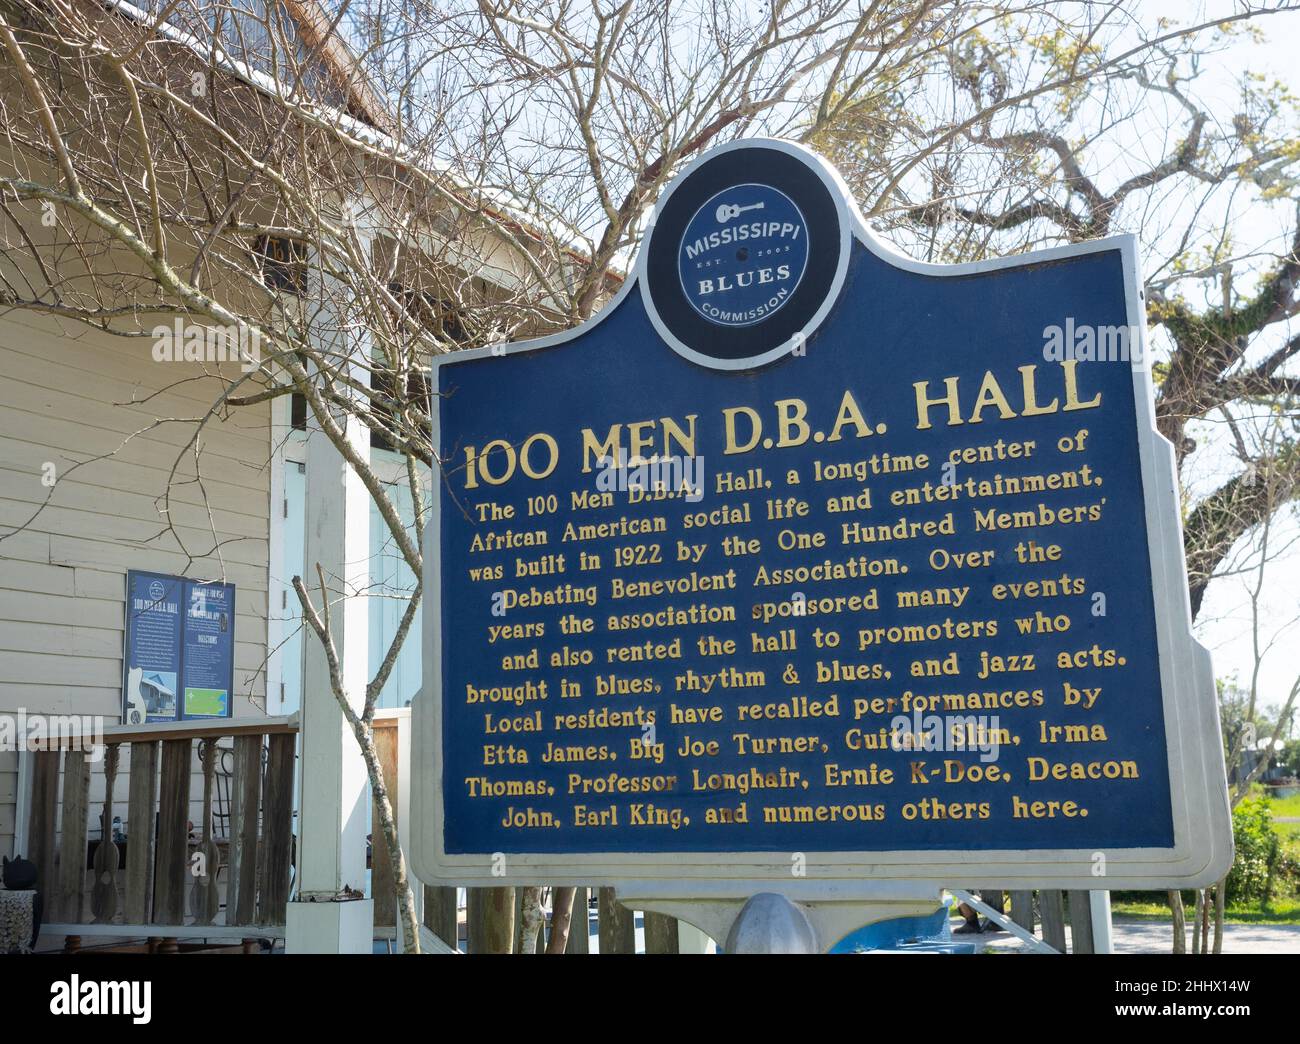 Melden Sie sich auf dem Mississippi Blues Trail vor der 100 Men DBA Hall in Bay St. Louis an. Stockfoto